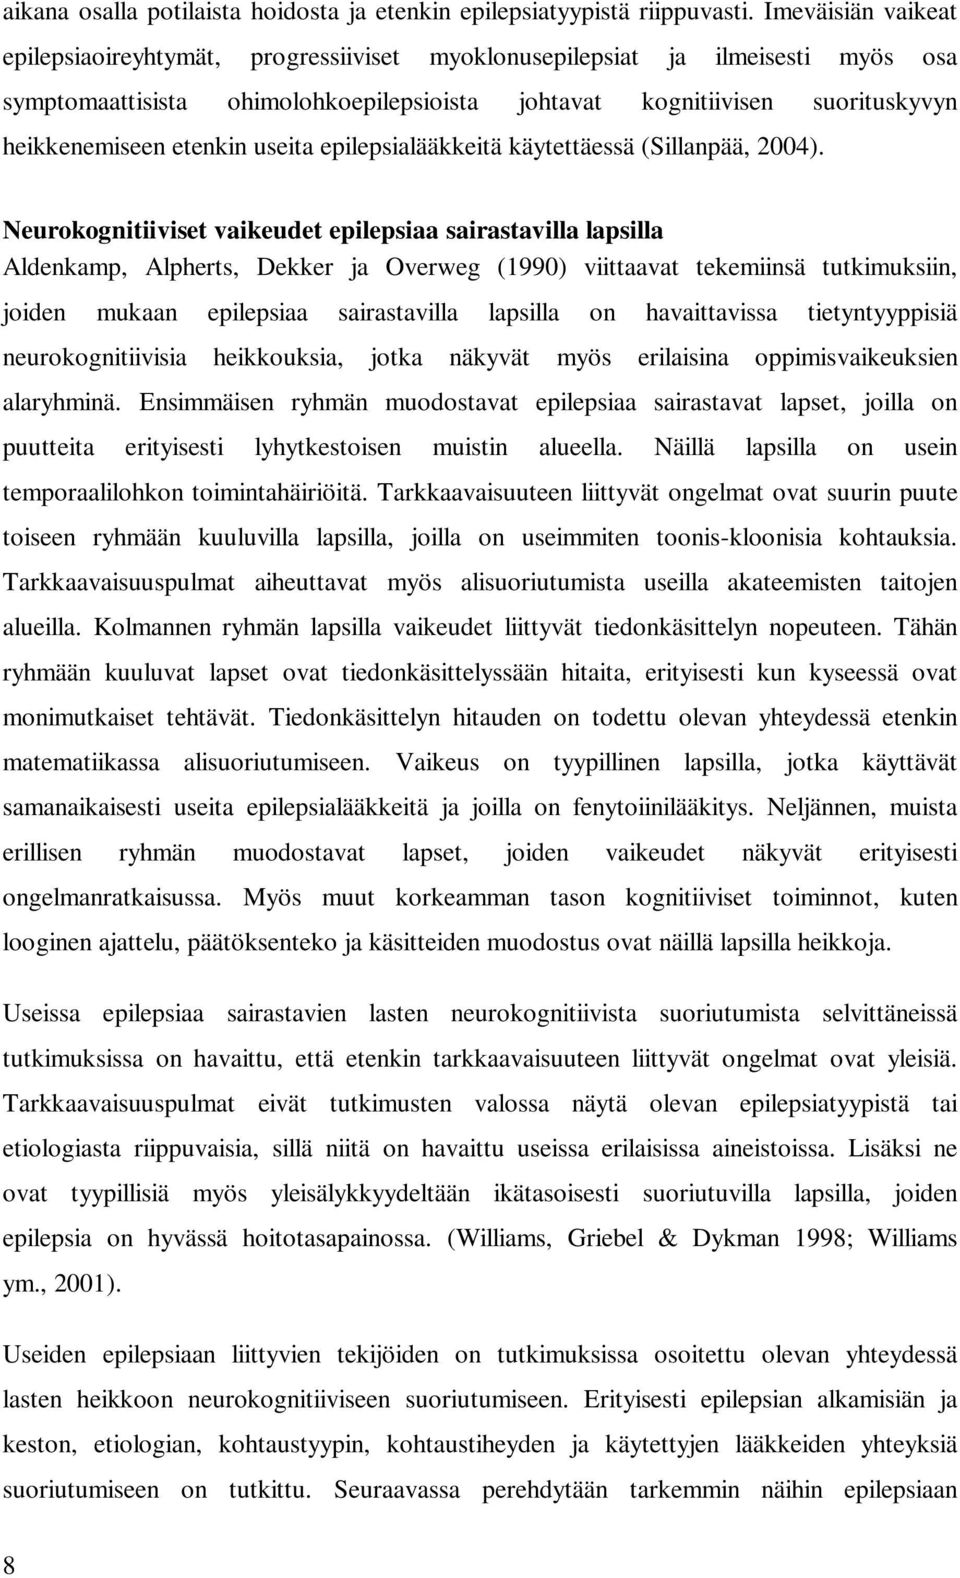 etenkin useita epilepsialääkkeitä käytettäessä (Sillanpää, 2004).